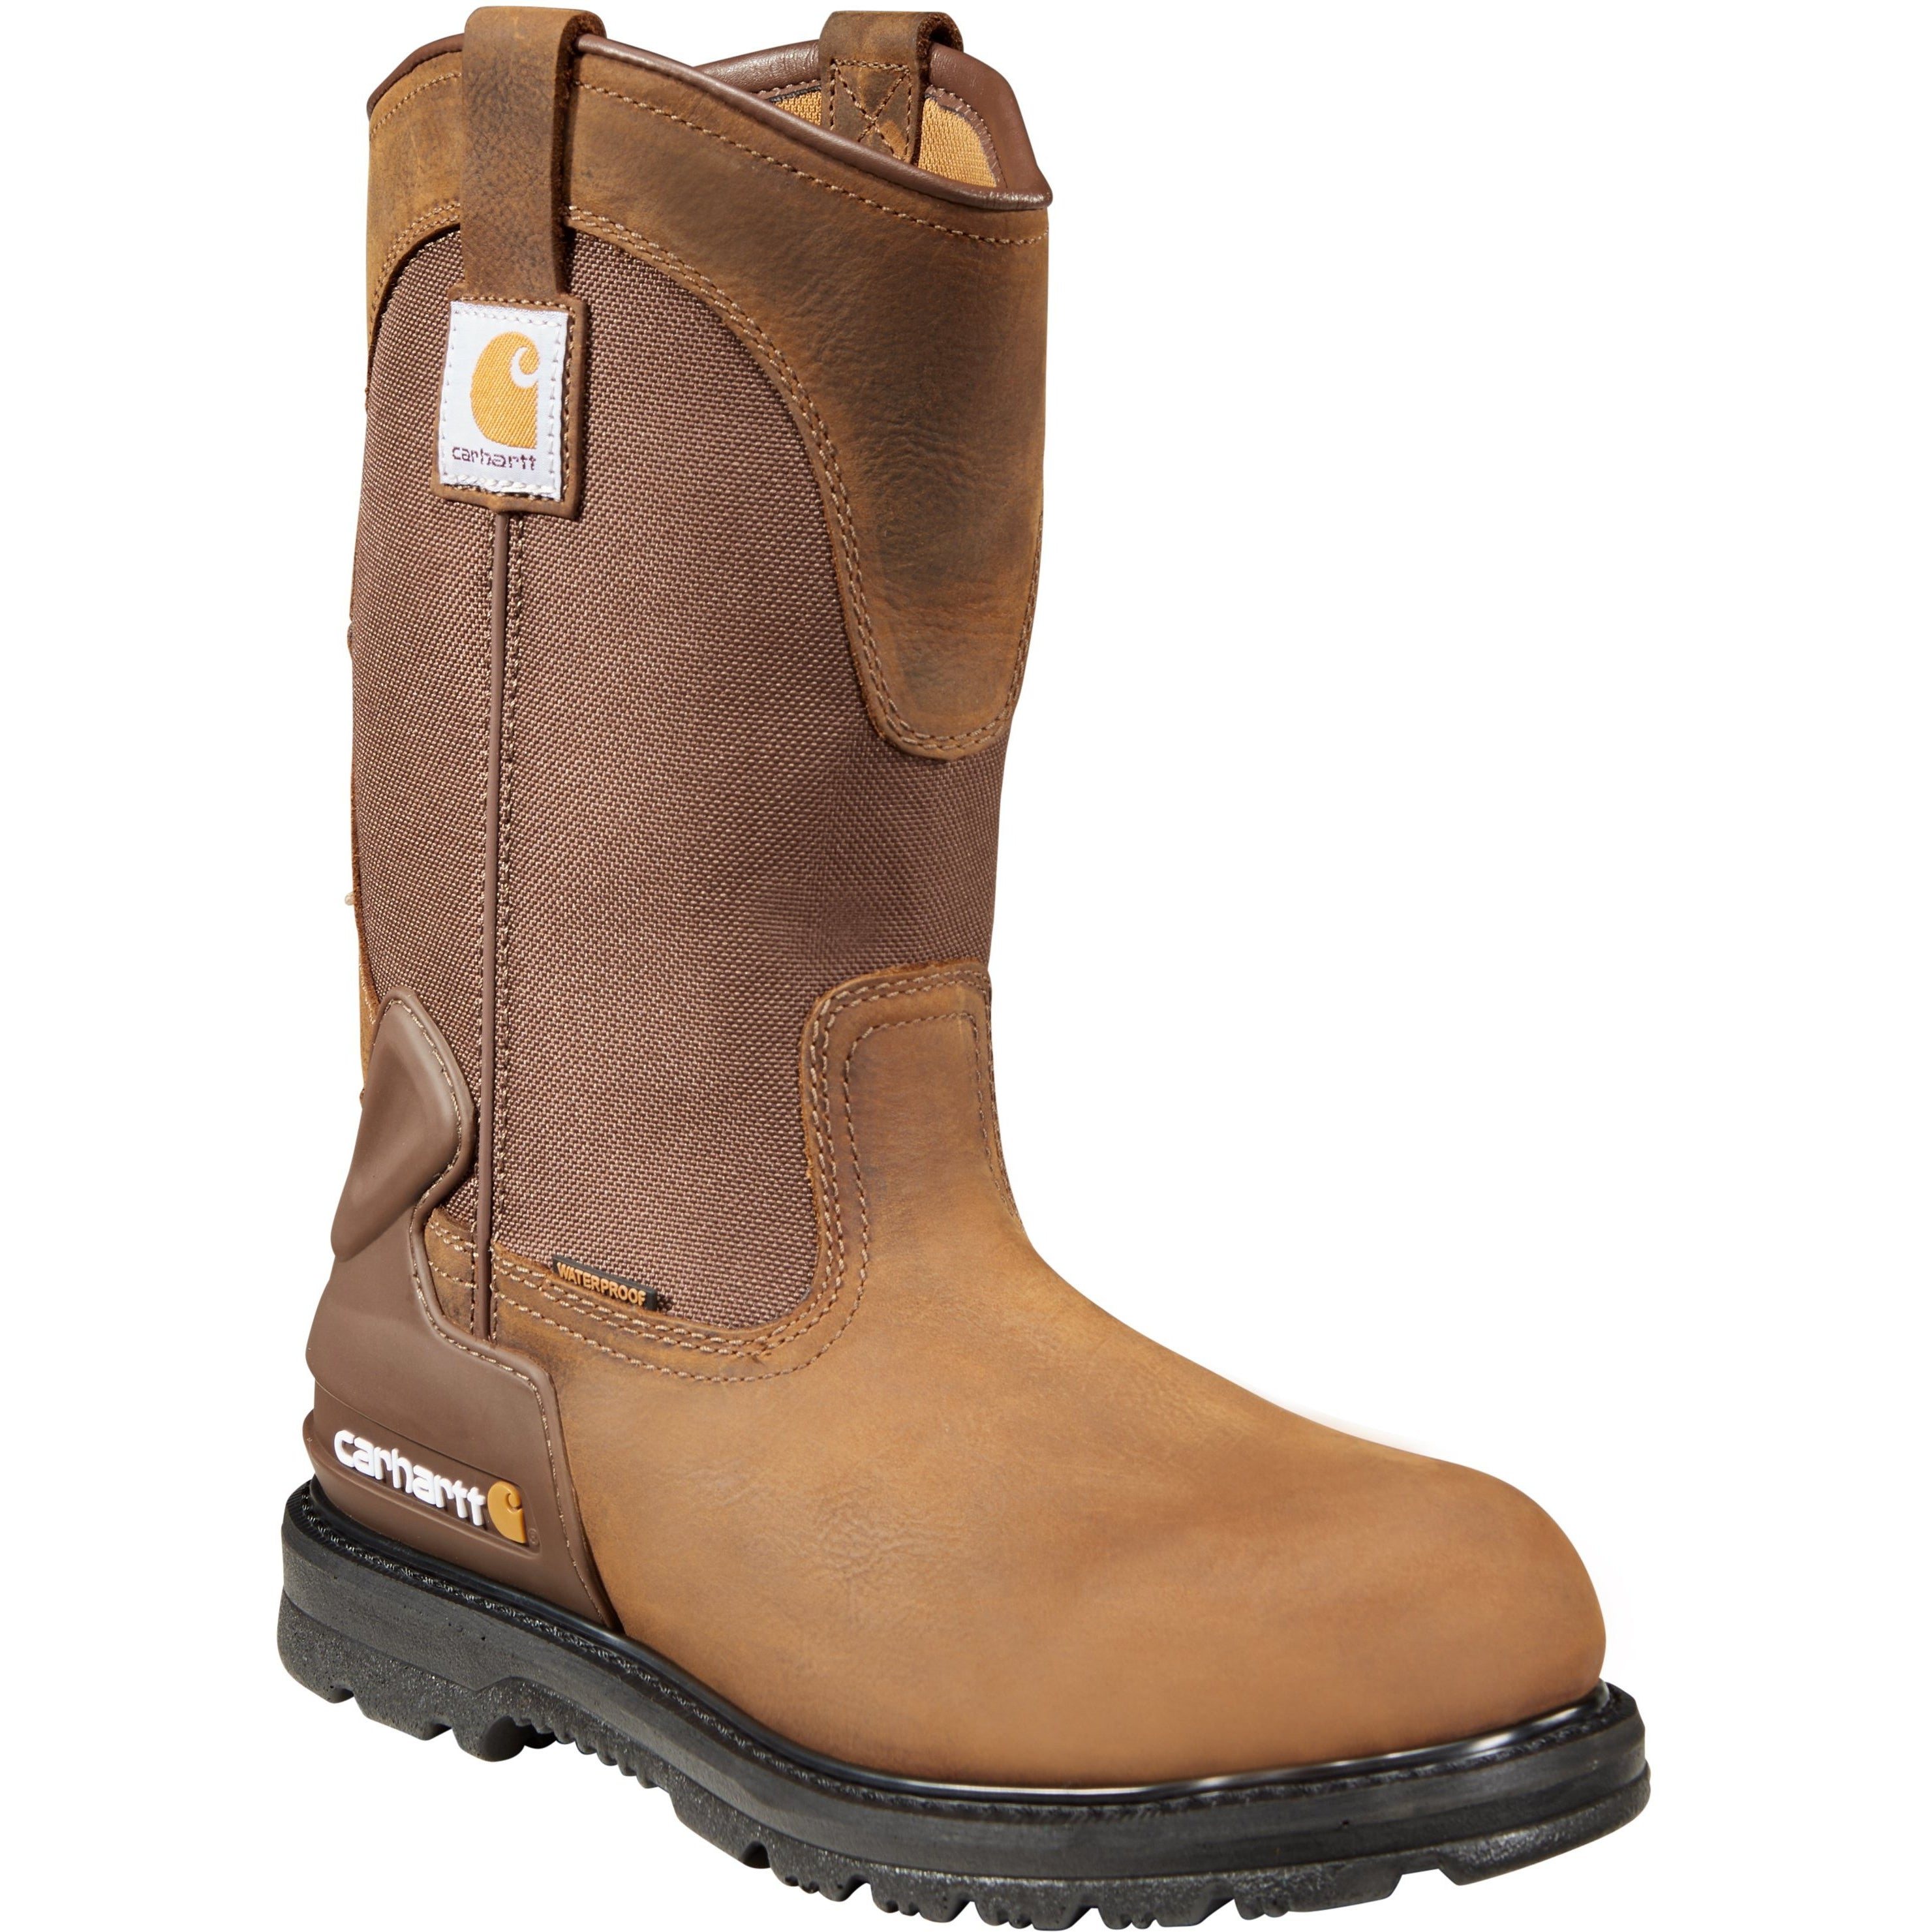 Carhartt Men's 11" Soft Toe WP Wellington Work Boot - Brown - CMP1100 8 / Medium / Brown - Overlook Boots